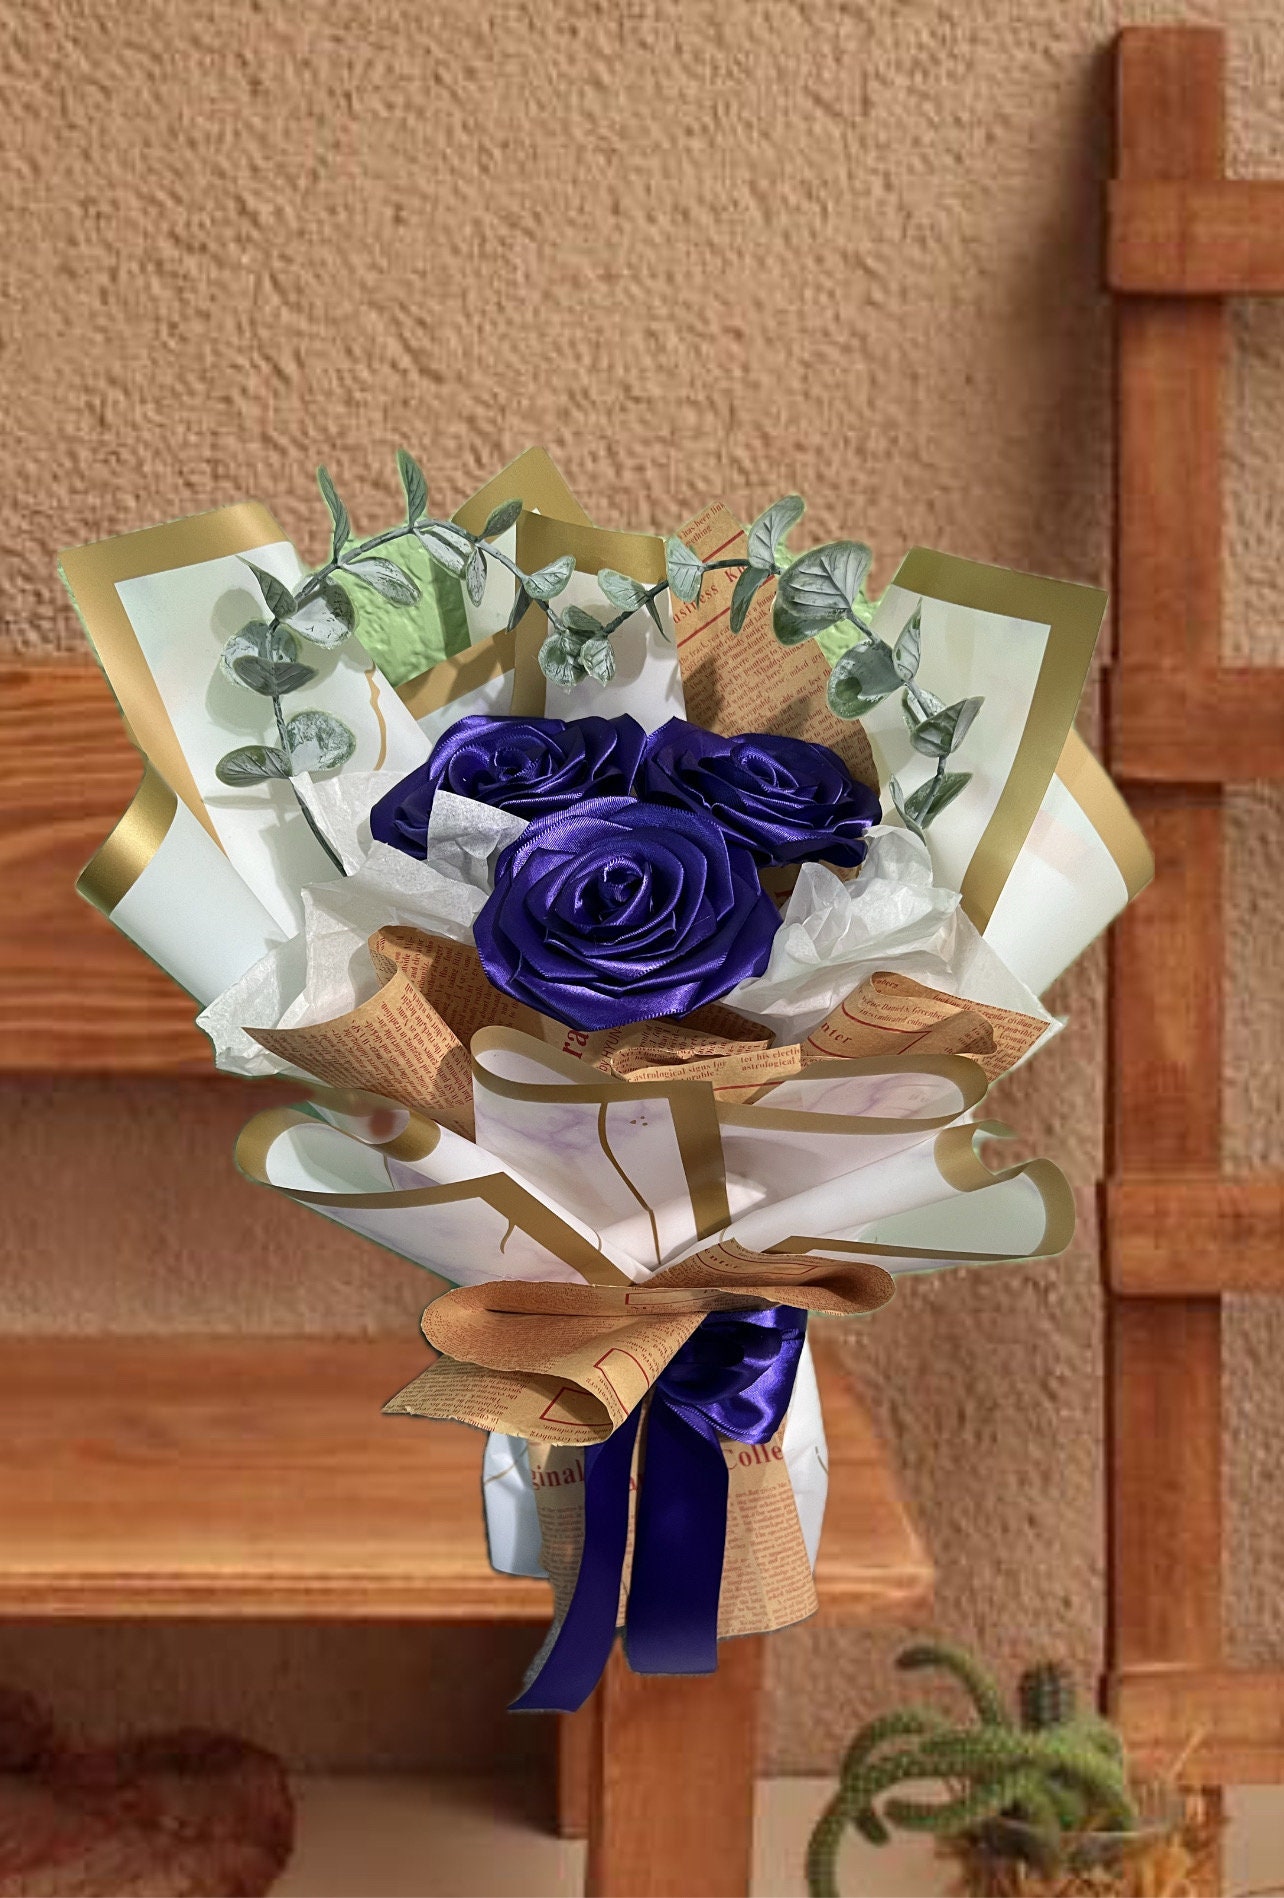 Mini Paper Rose Bouquet / Ramo De Rosas De Papel / Desk Flowers / Ramo  Buchon / Desk Decoration 